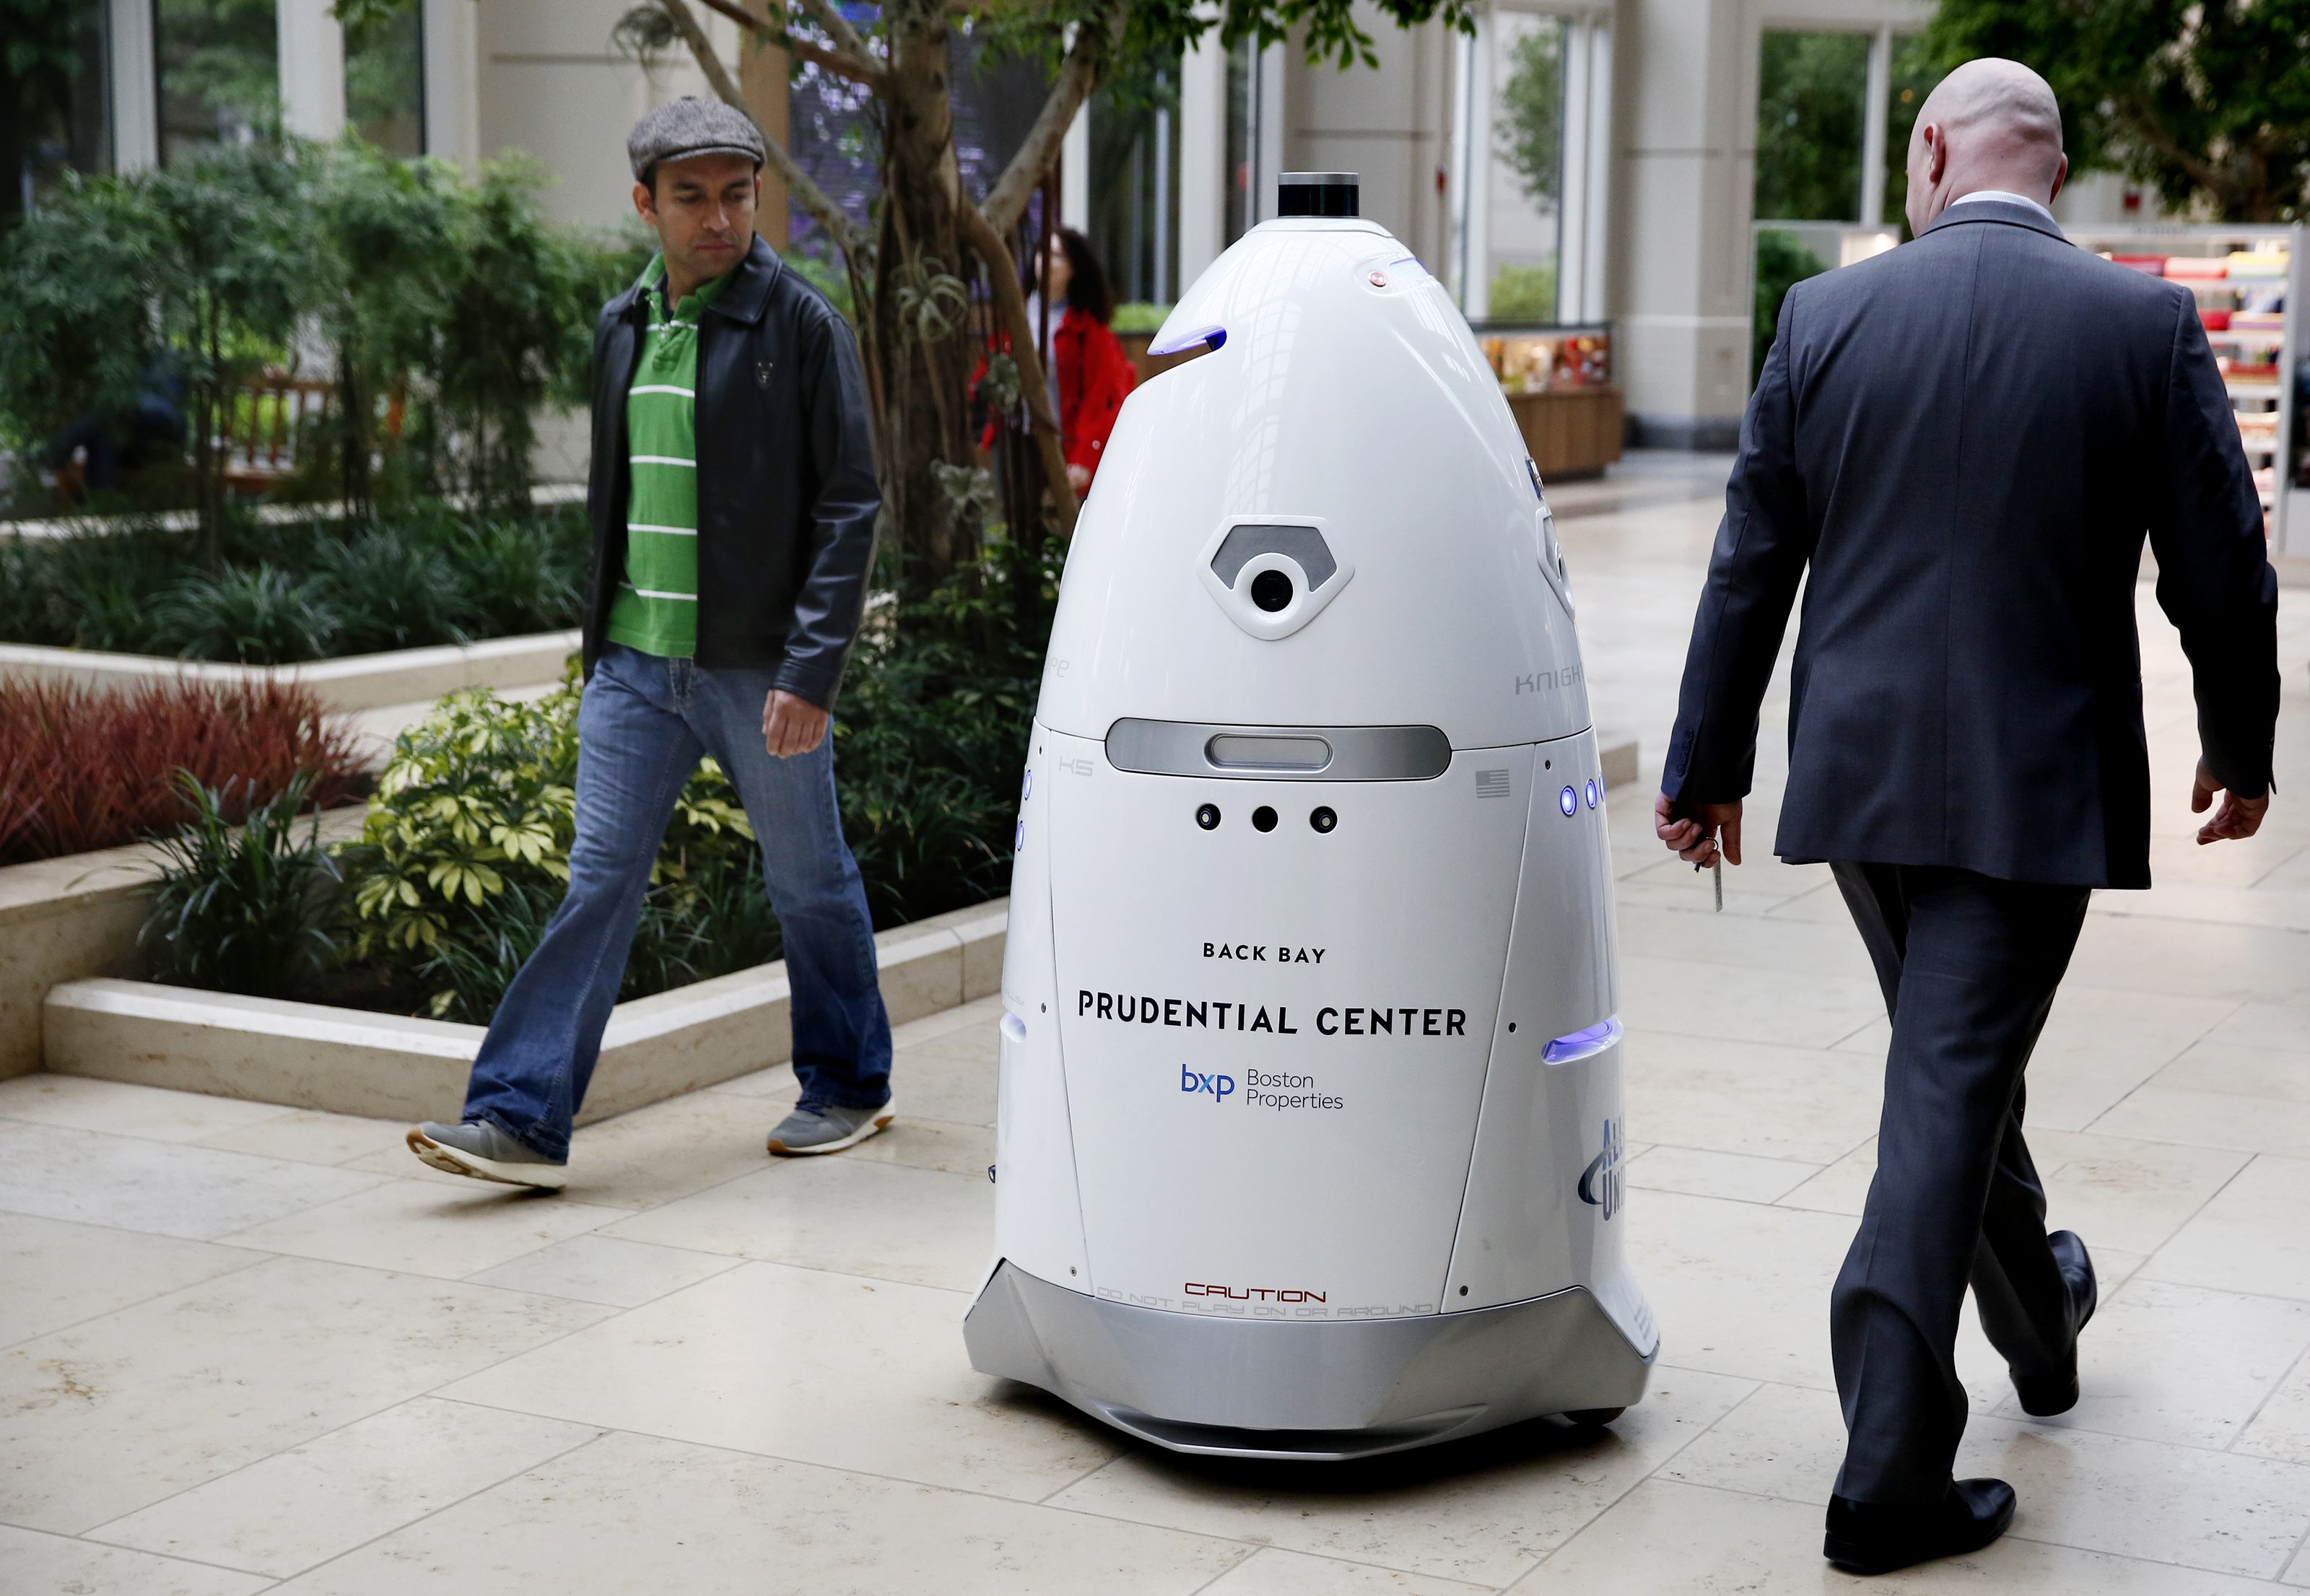 Les piétons vérifient le garde de sécurité robotique alors qu'il se promène dans le centre commercial.